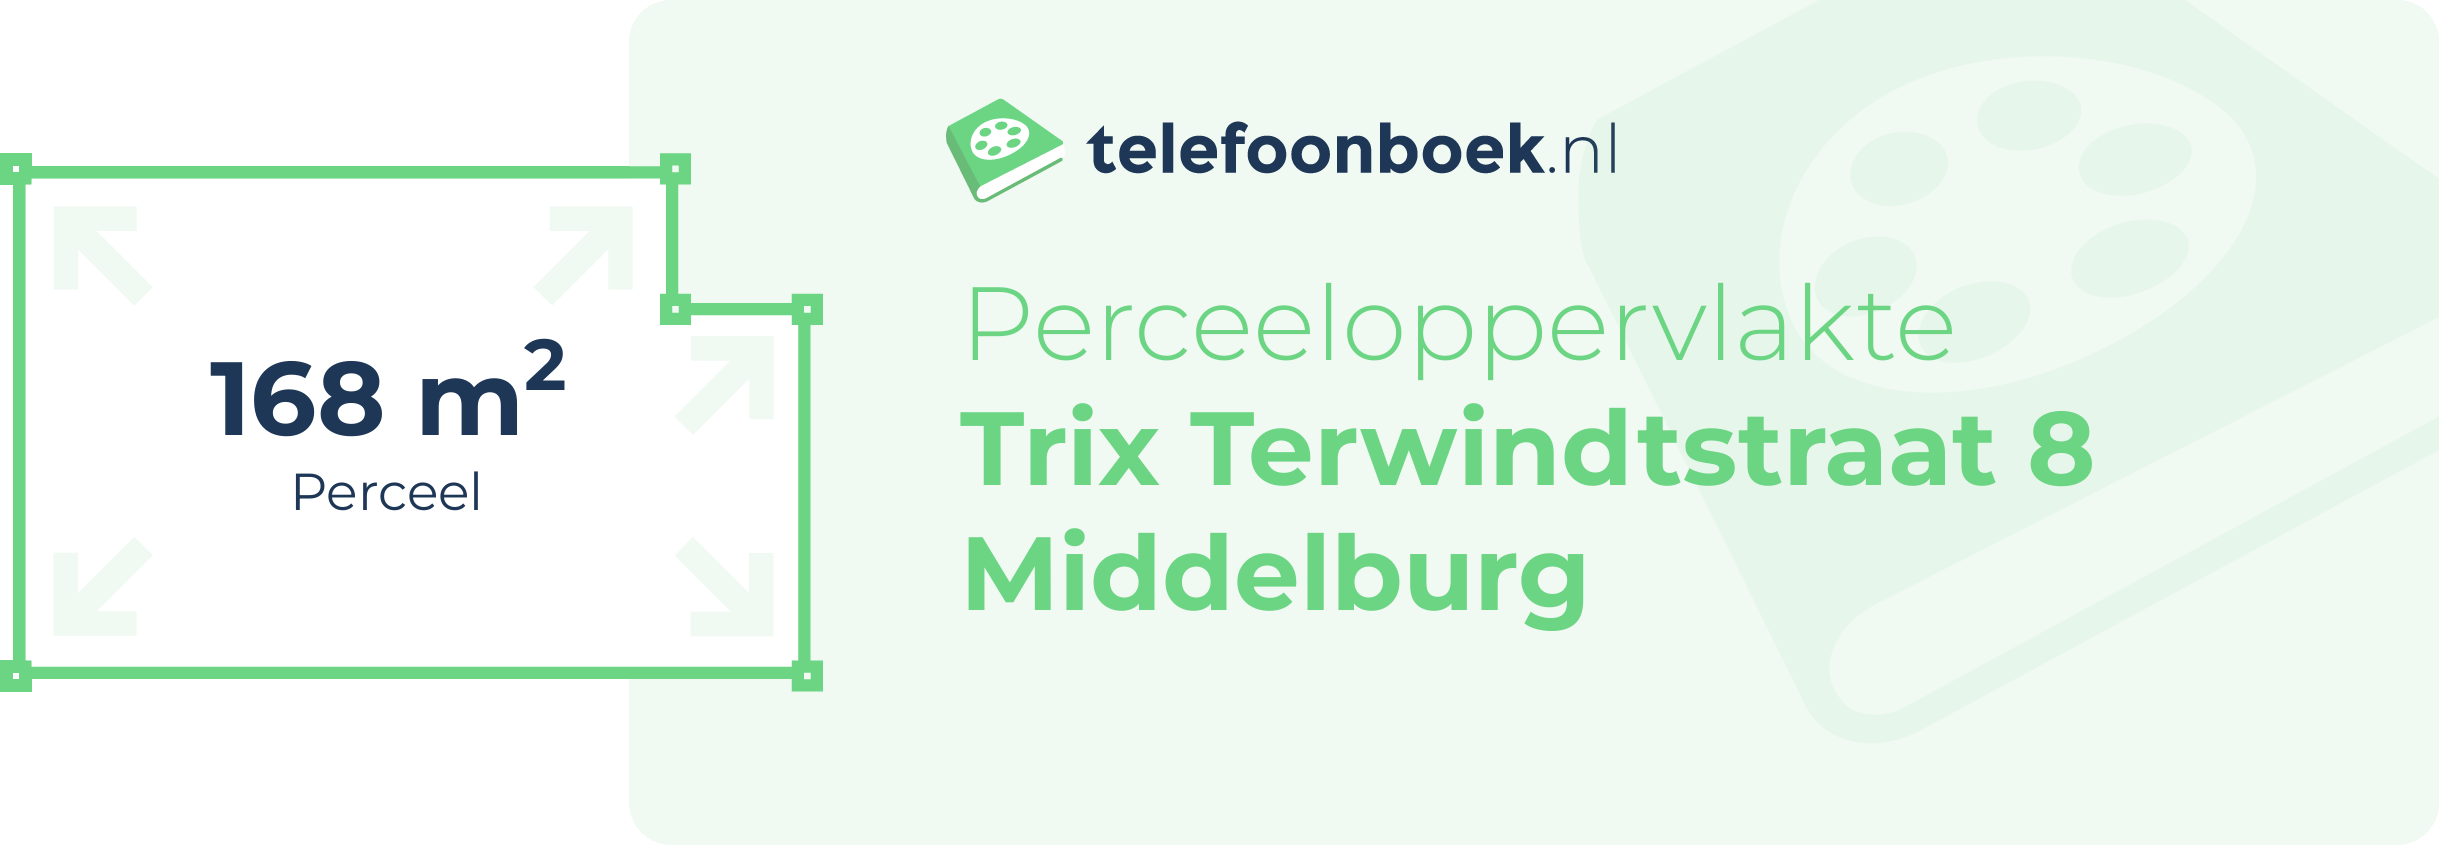 Perceeloppervlakte Trix Terwindtstraat 8 Middelburg